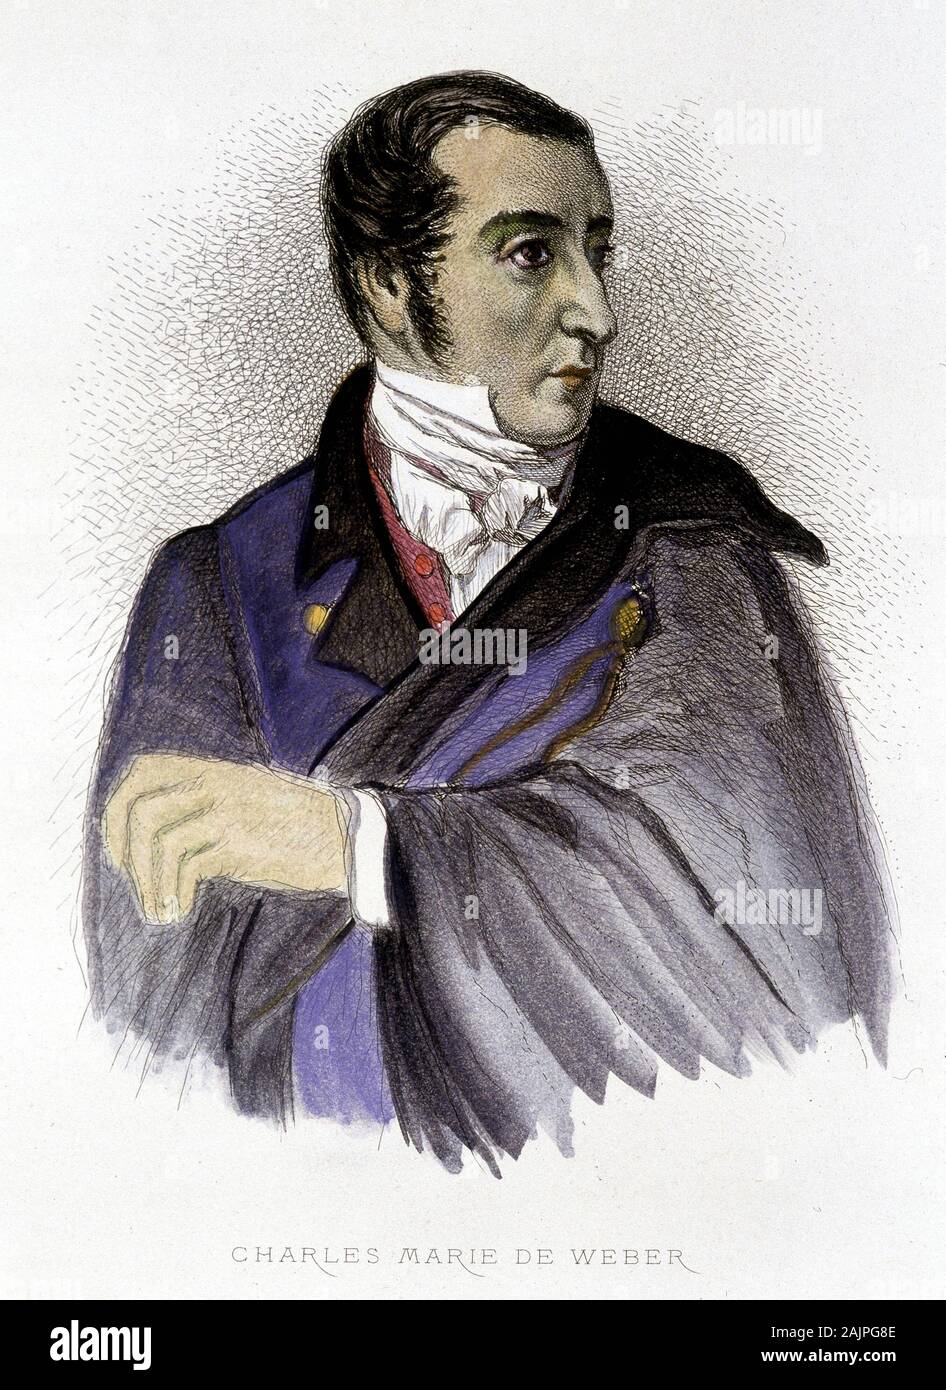 Portrait de Carl Maria von Weber, compositeur allemand (1786-1826) - gravure, XIXeme siecle Stock Photo